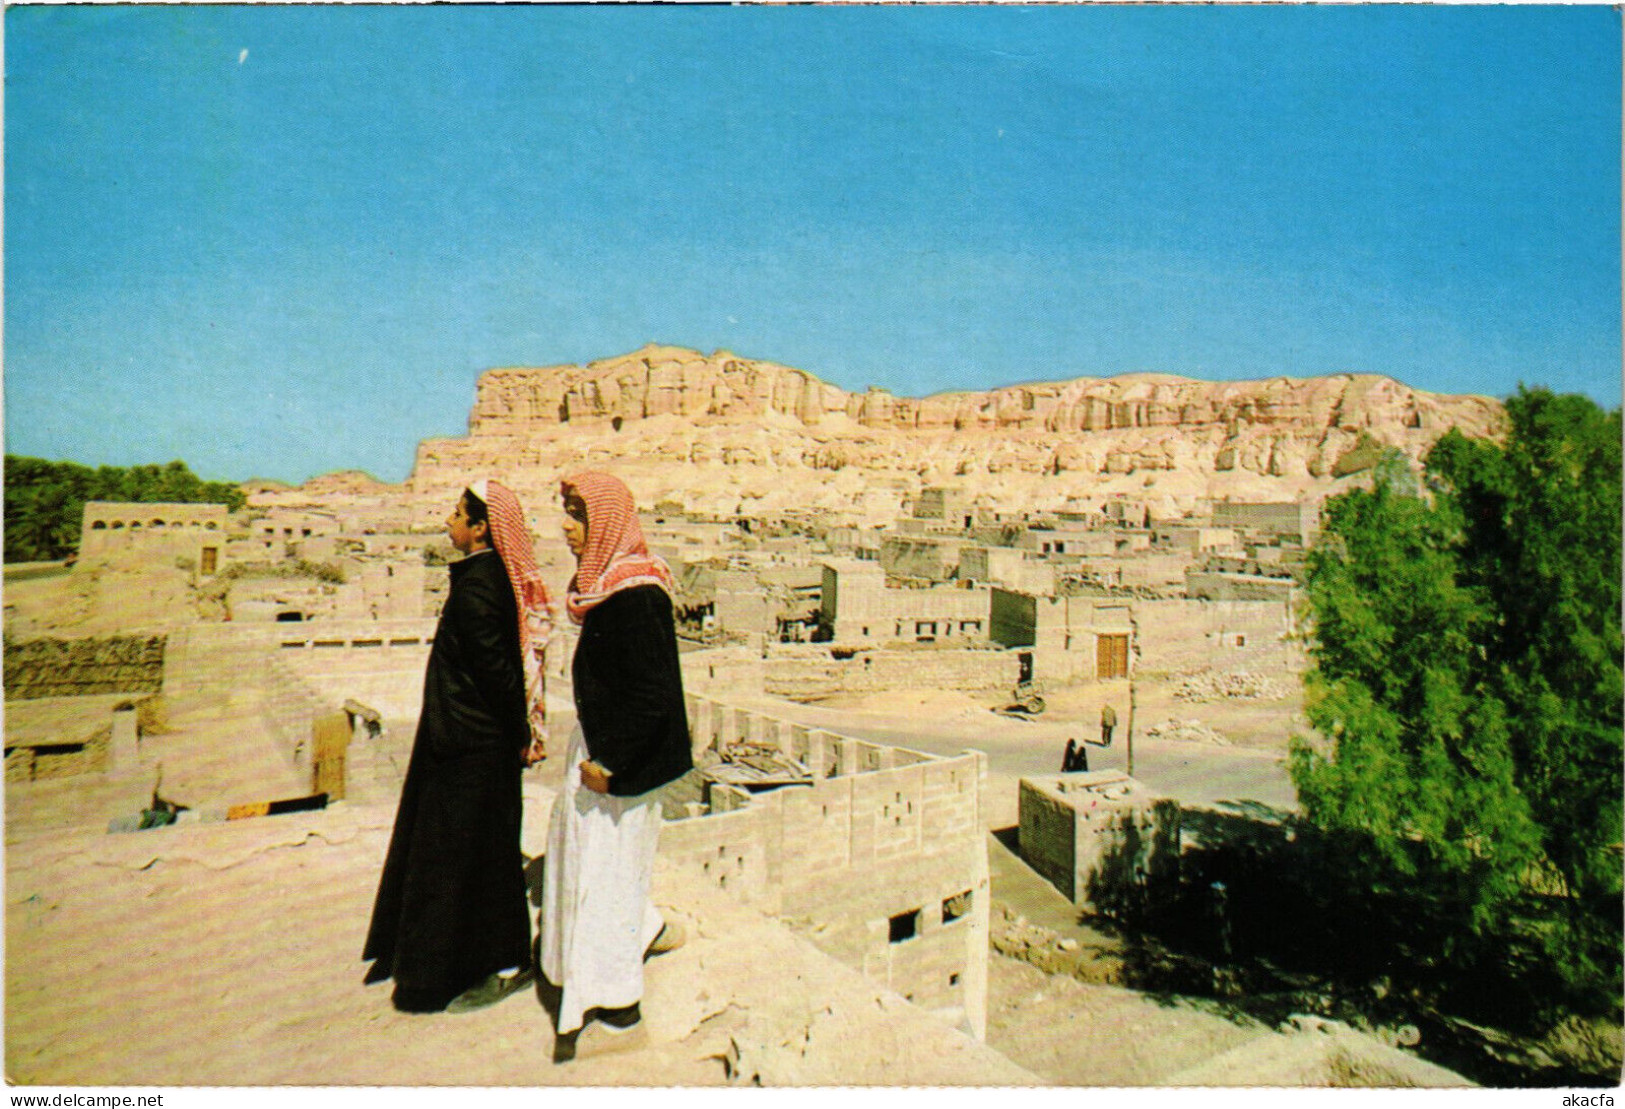 PC SAUDI ARABIA, OLD VILLAGES AT AL HASSA, Modern Postcard (b52889) - Saudi Arabia